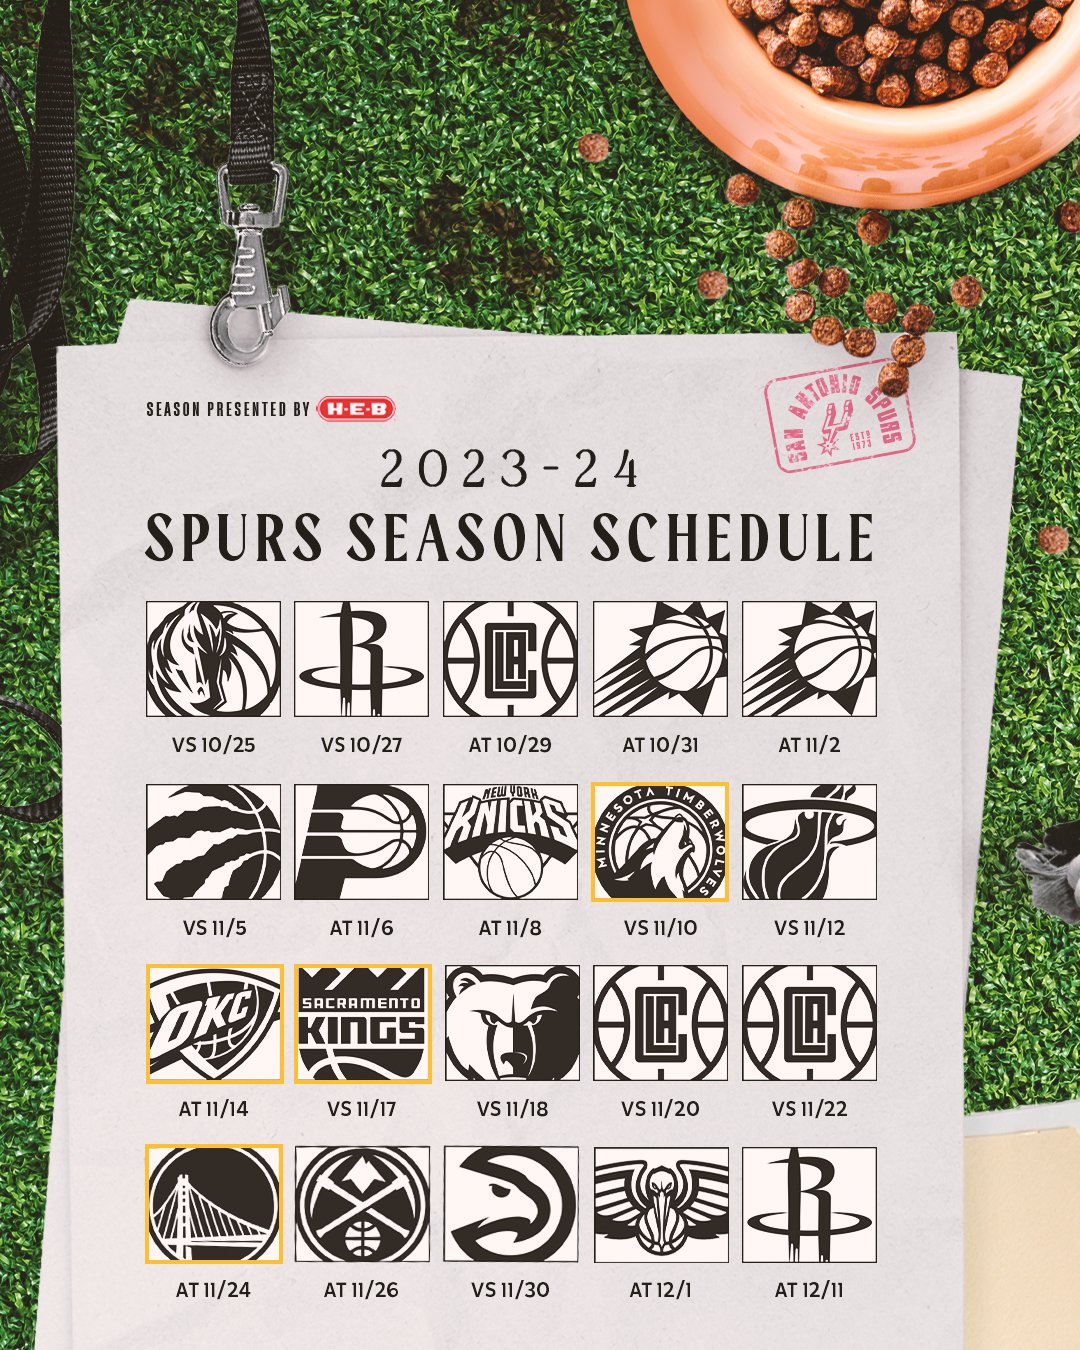 San Antonio Spurs on X: Year ☝️ begins in one week. Rep the